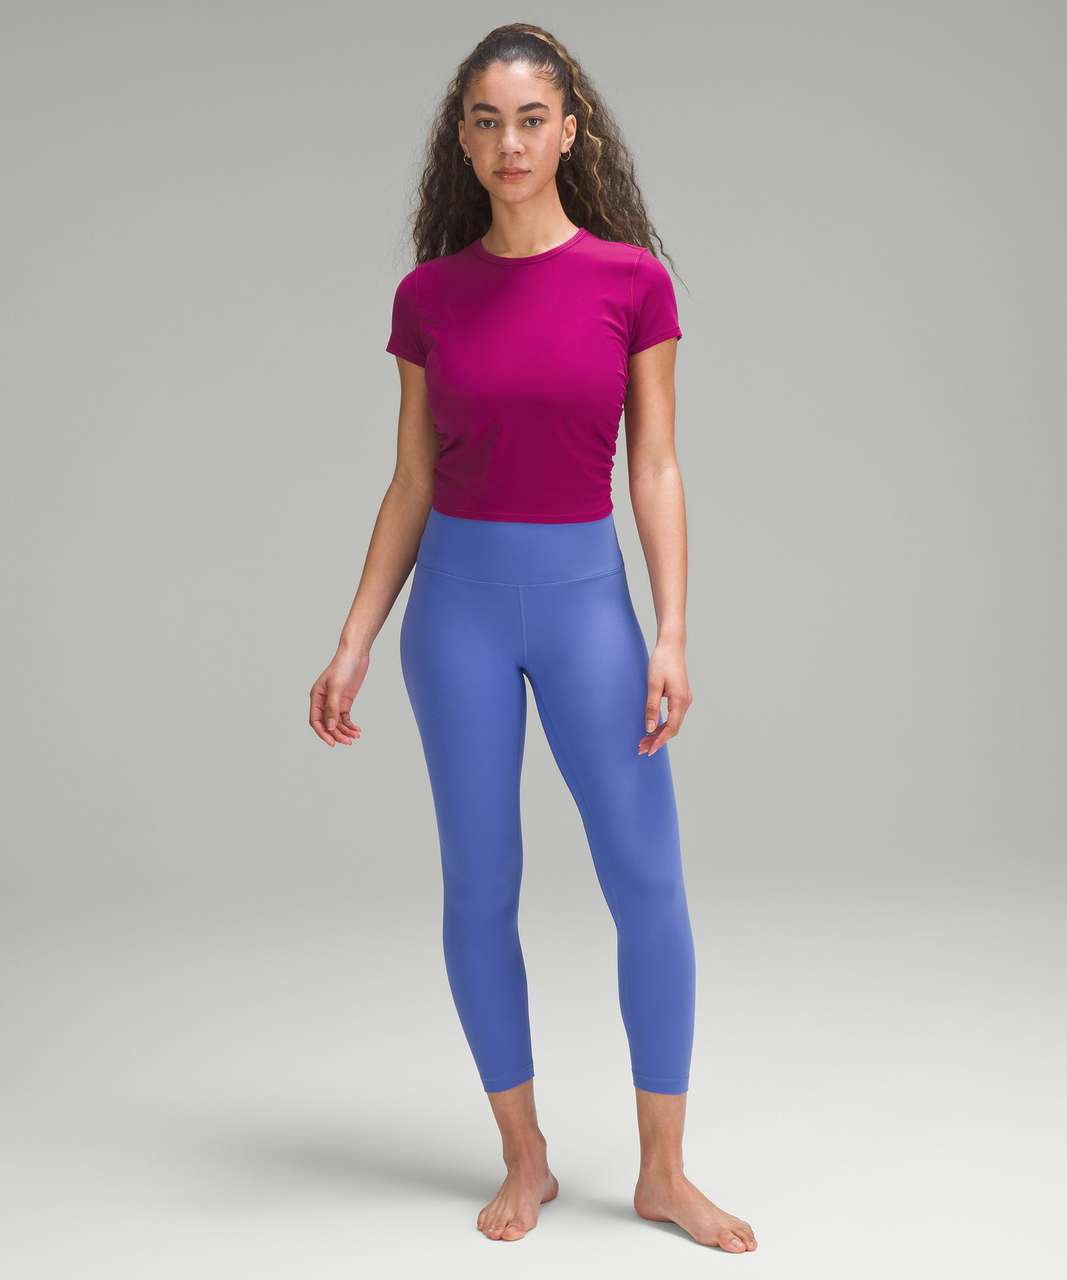 Lululemon Simply Bare Tight size 6 Darkest Magenta NWT Purple Yoga Pants  Nulu